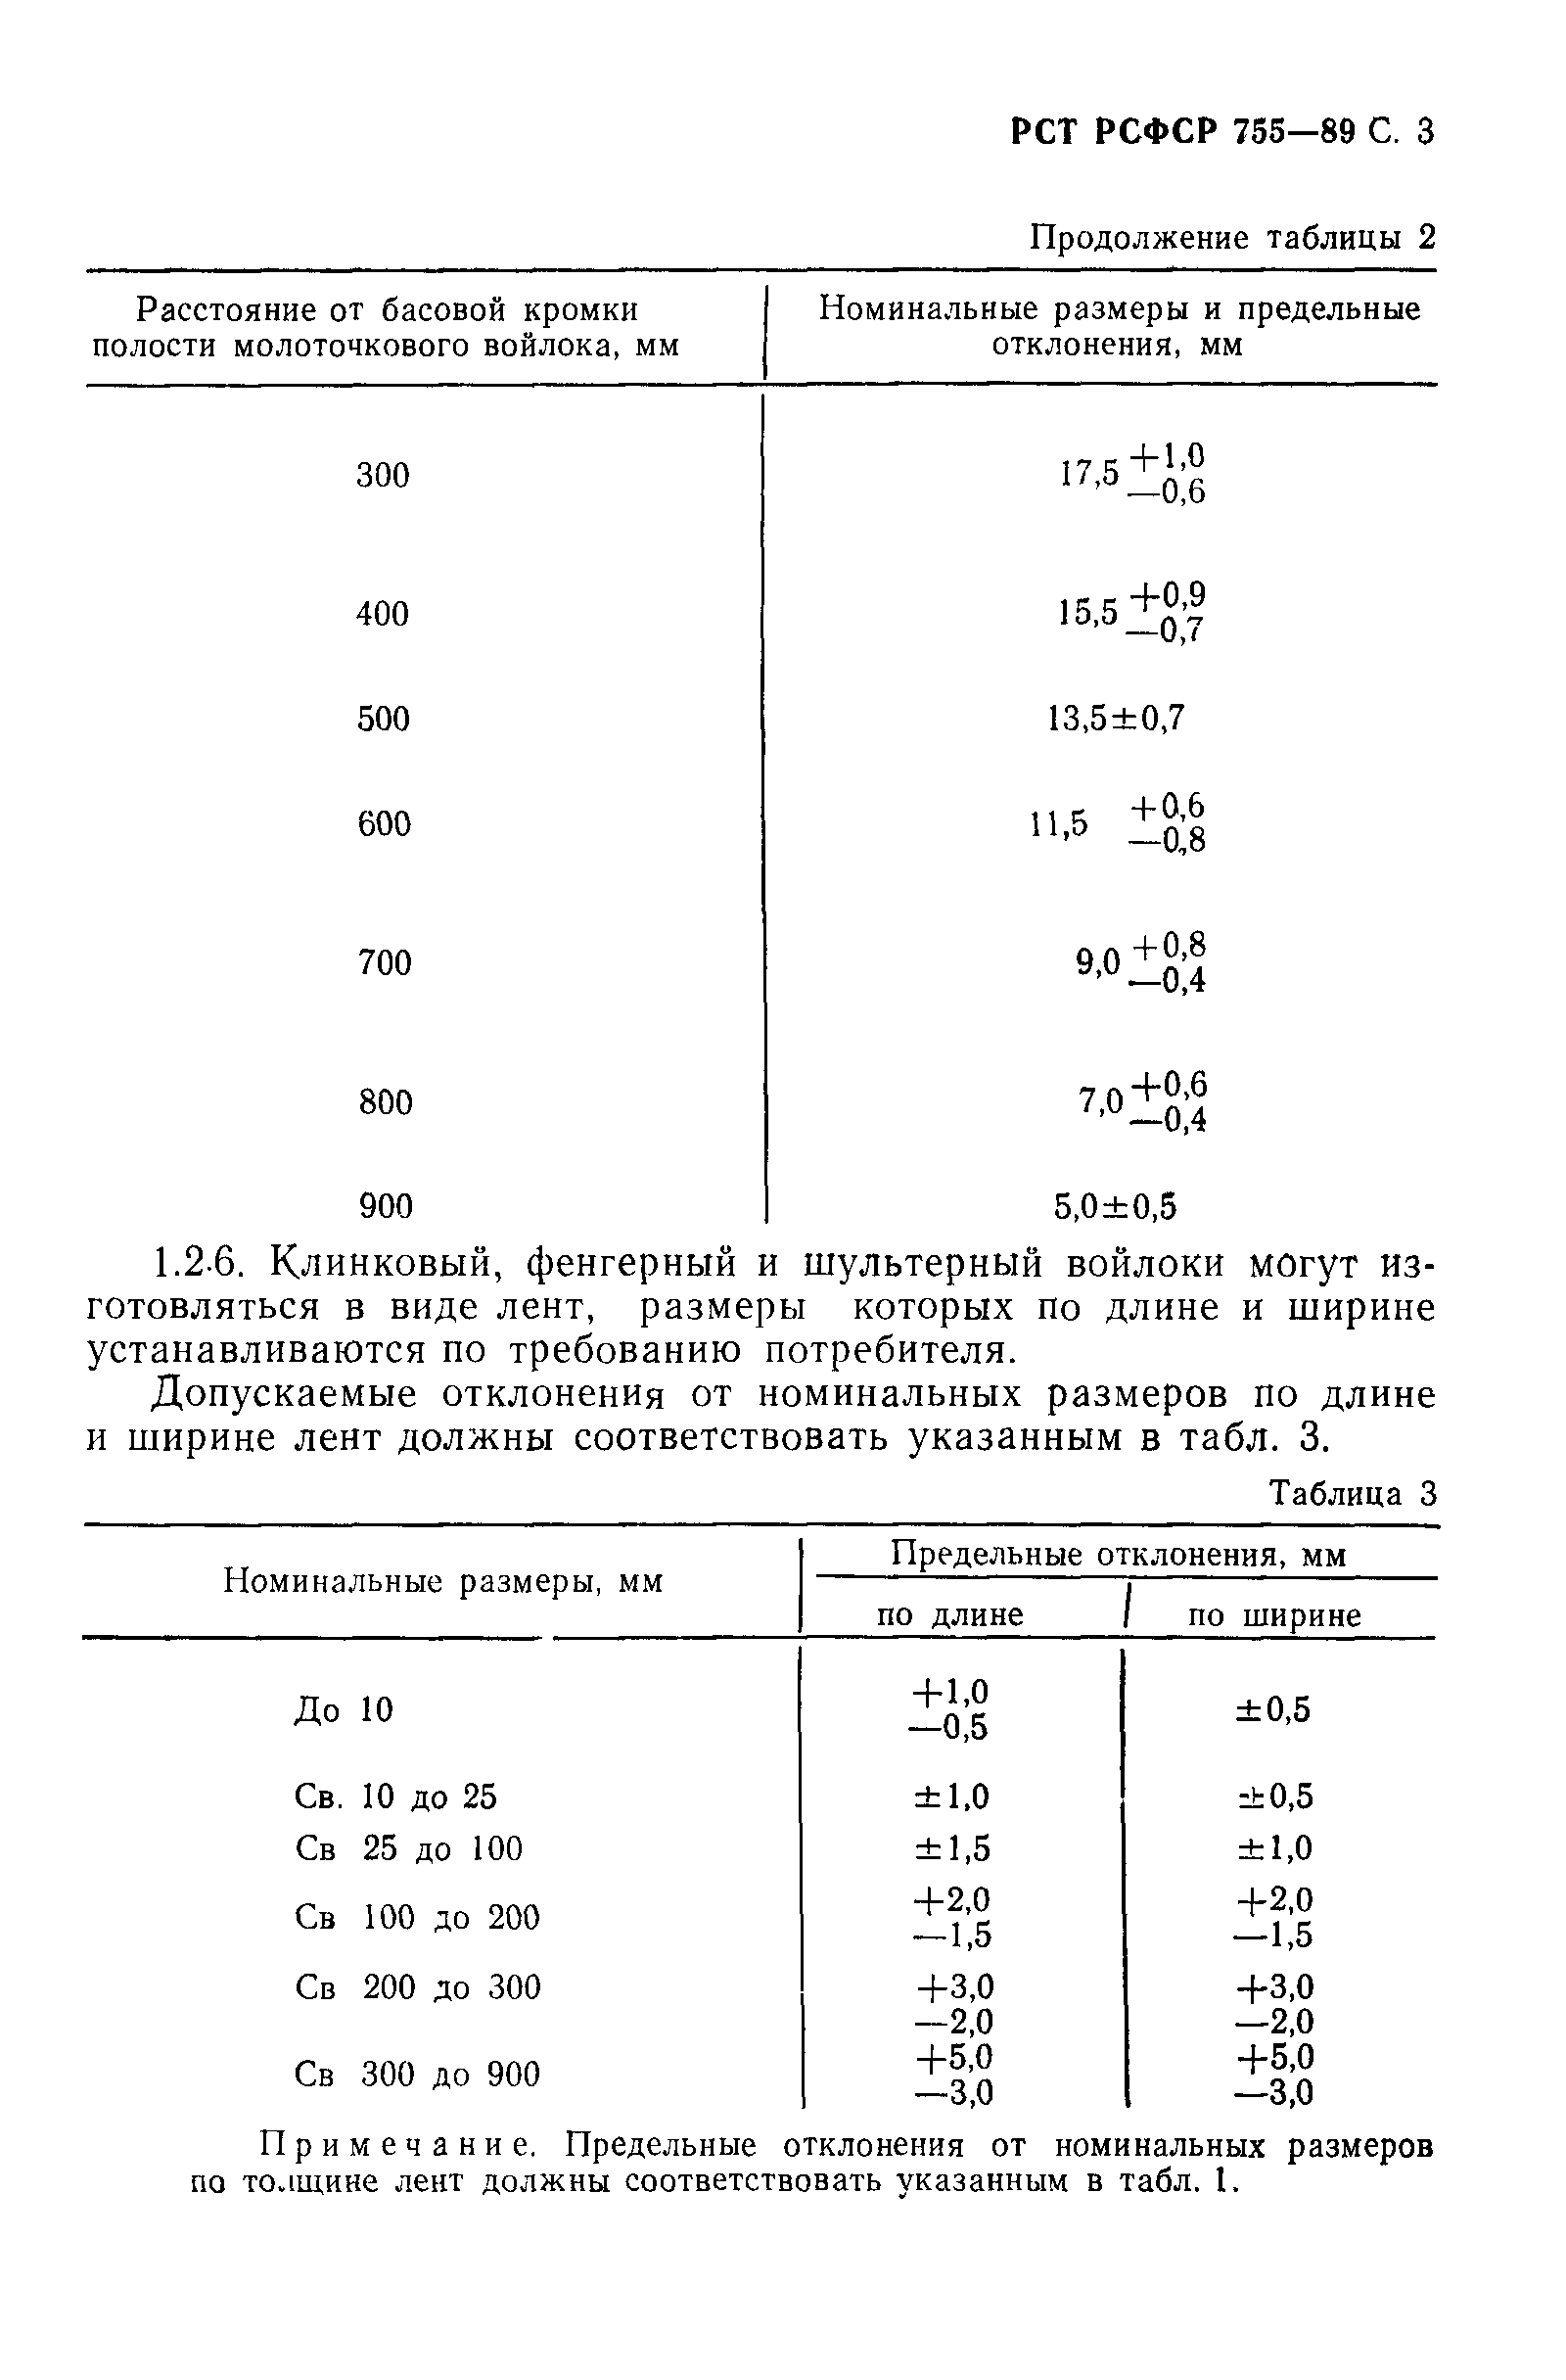 РСТ РСФСР 755-89